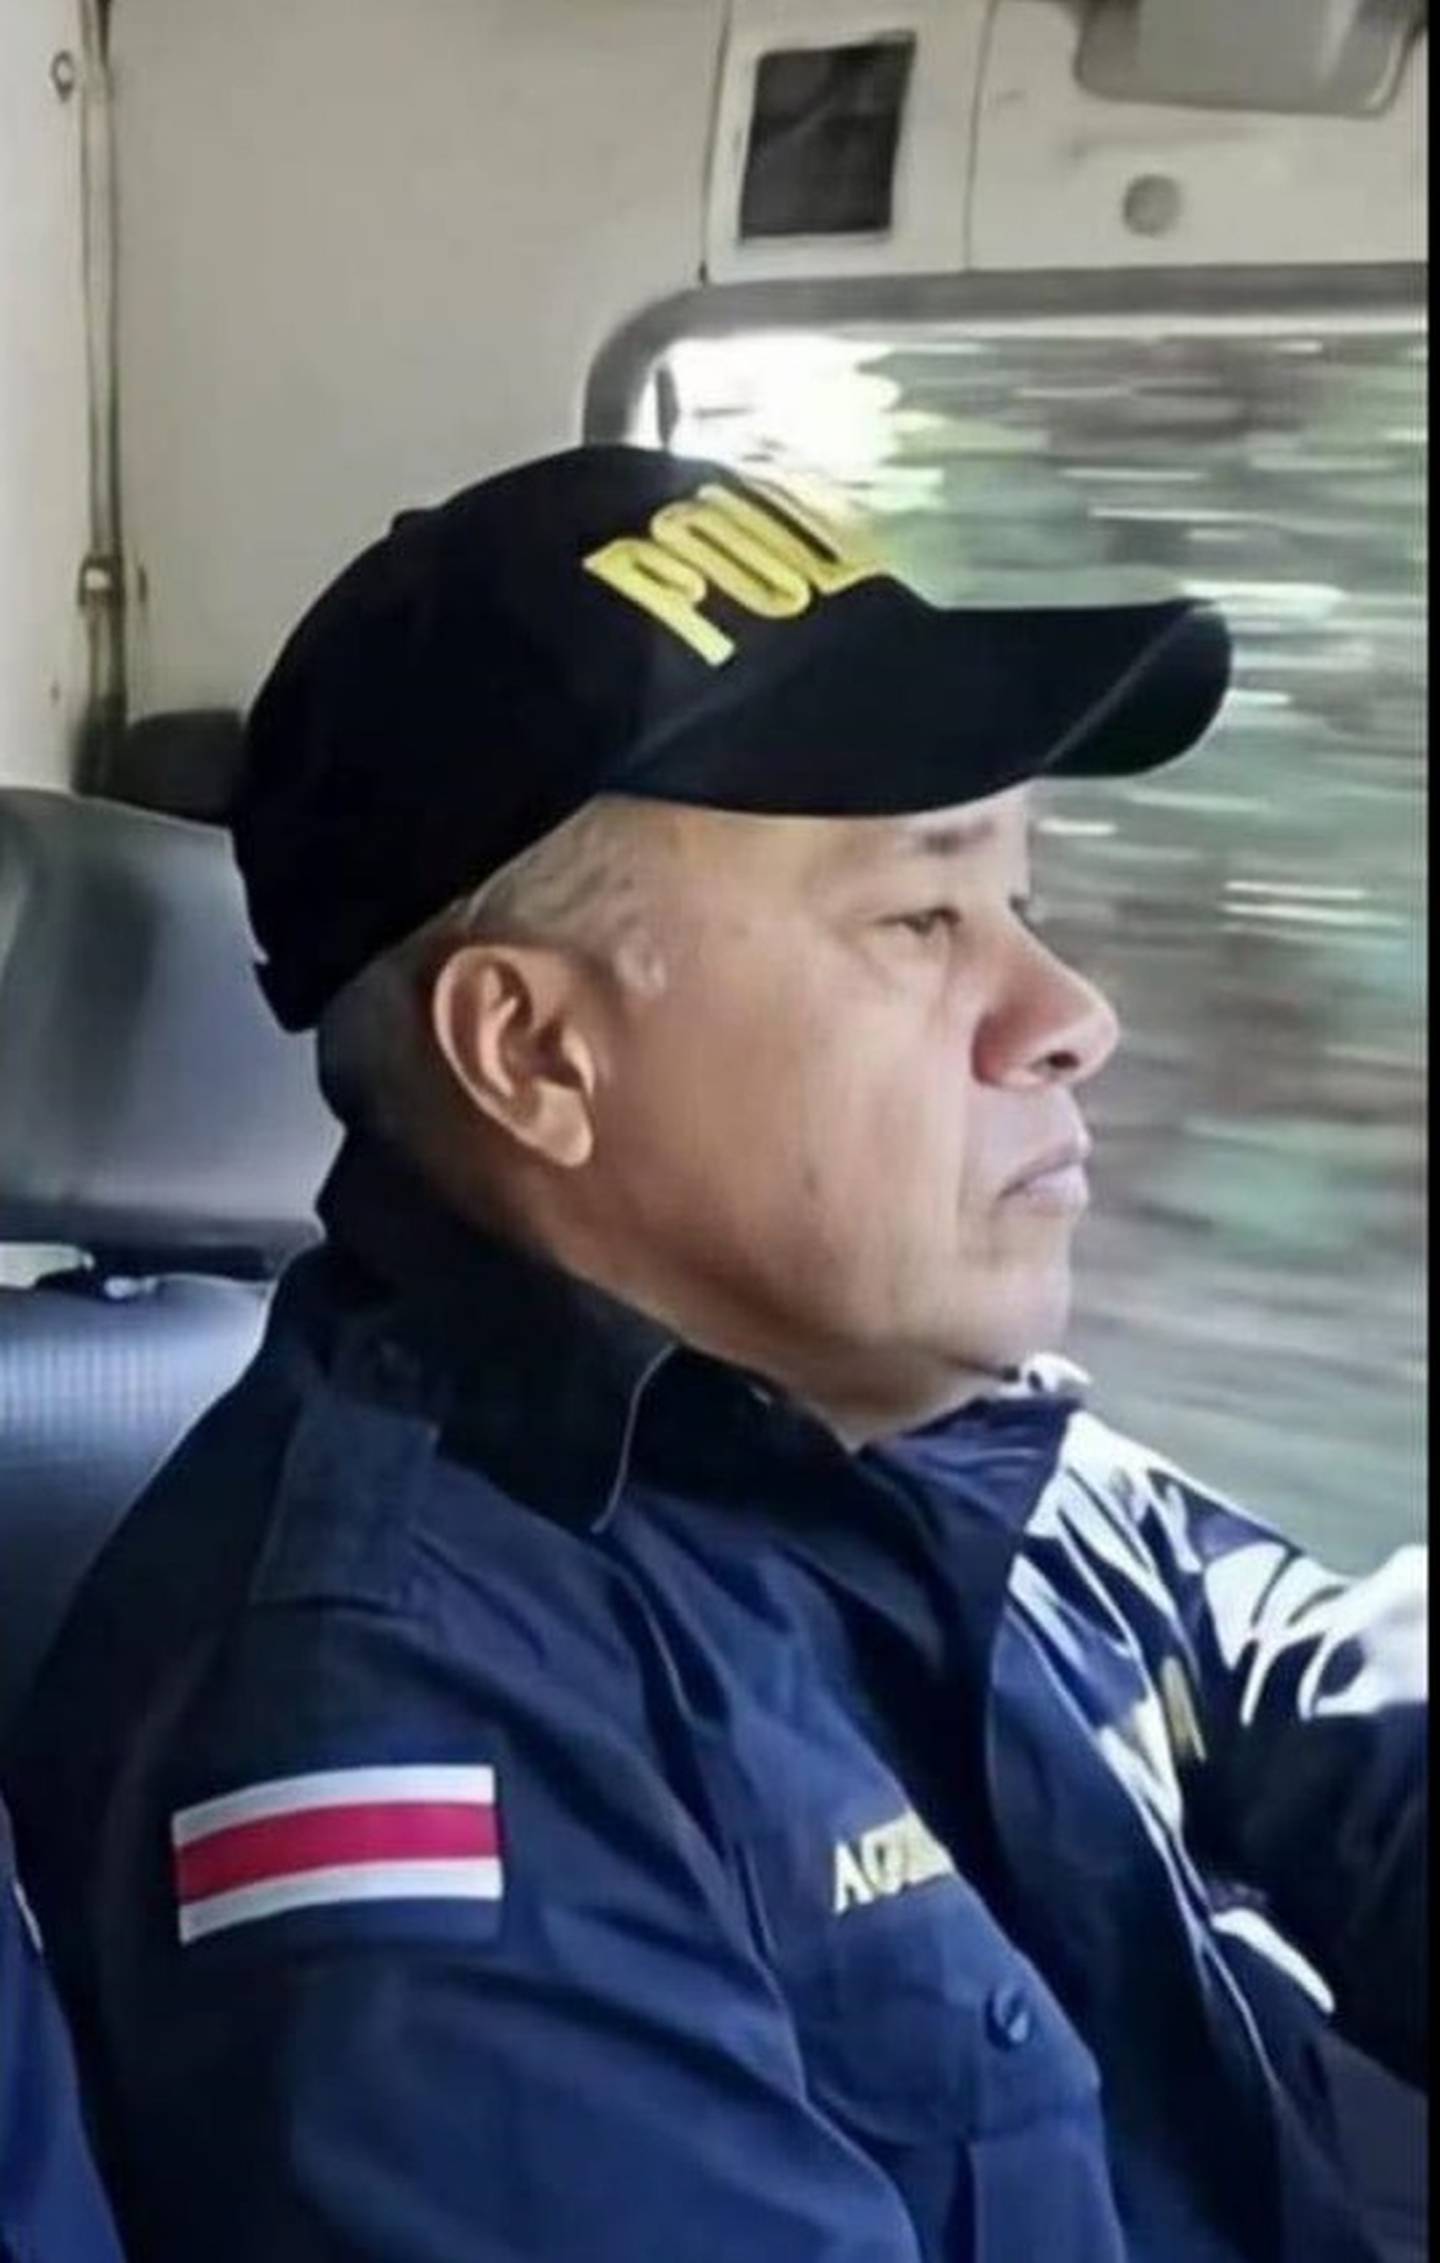 El oficial Marcos Aguilar Quesada falleció cuando se dirigía hacia su trabajo. Foto cortesía.